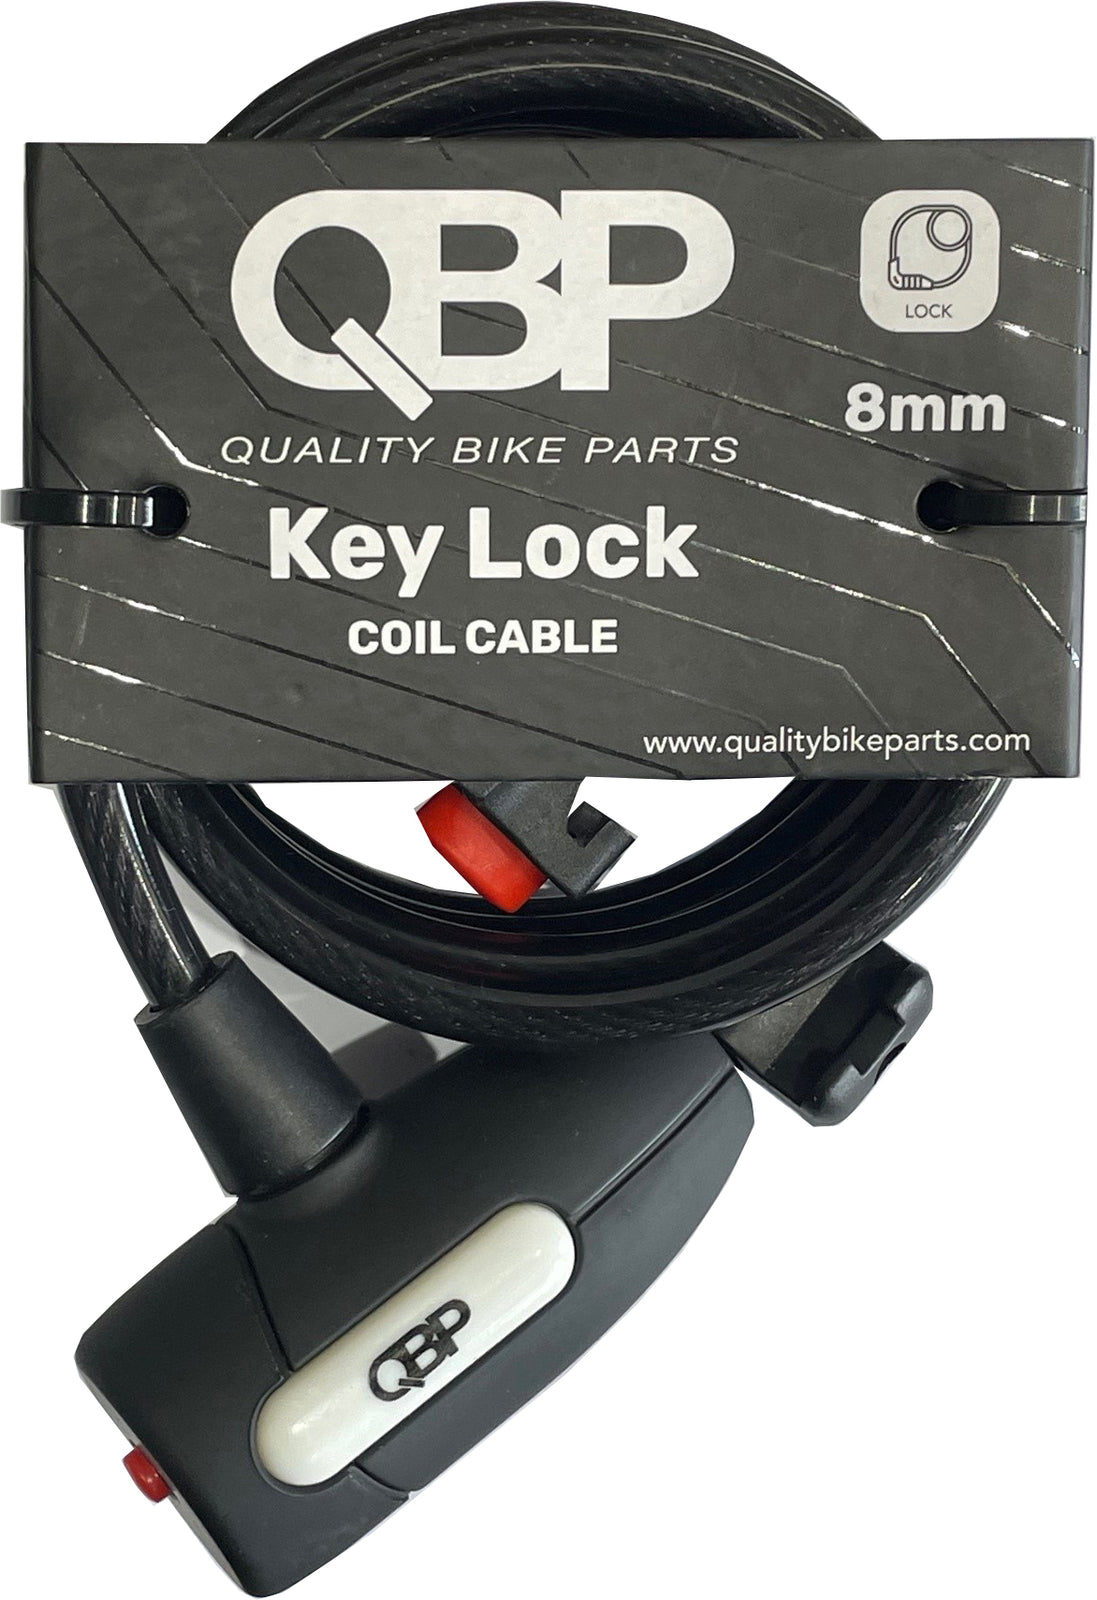 Qbp Locl Key 8mmx150cm